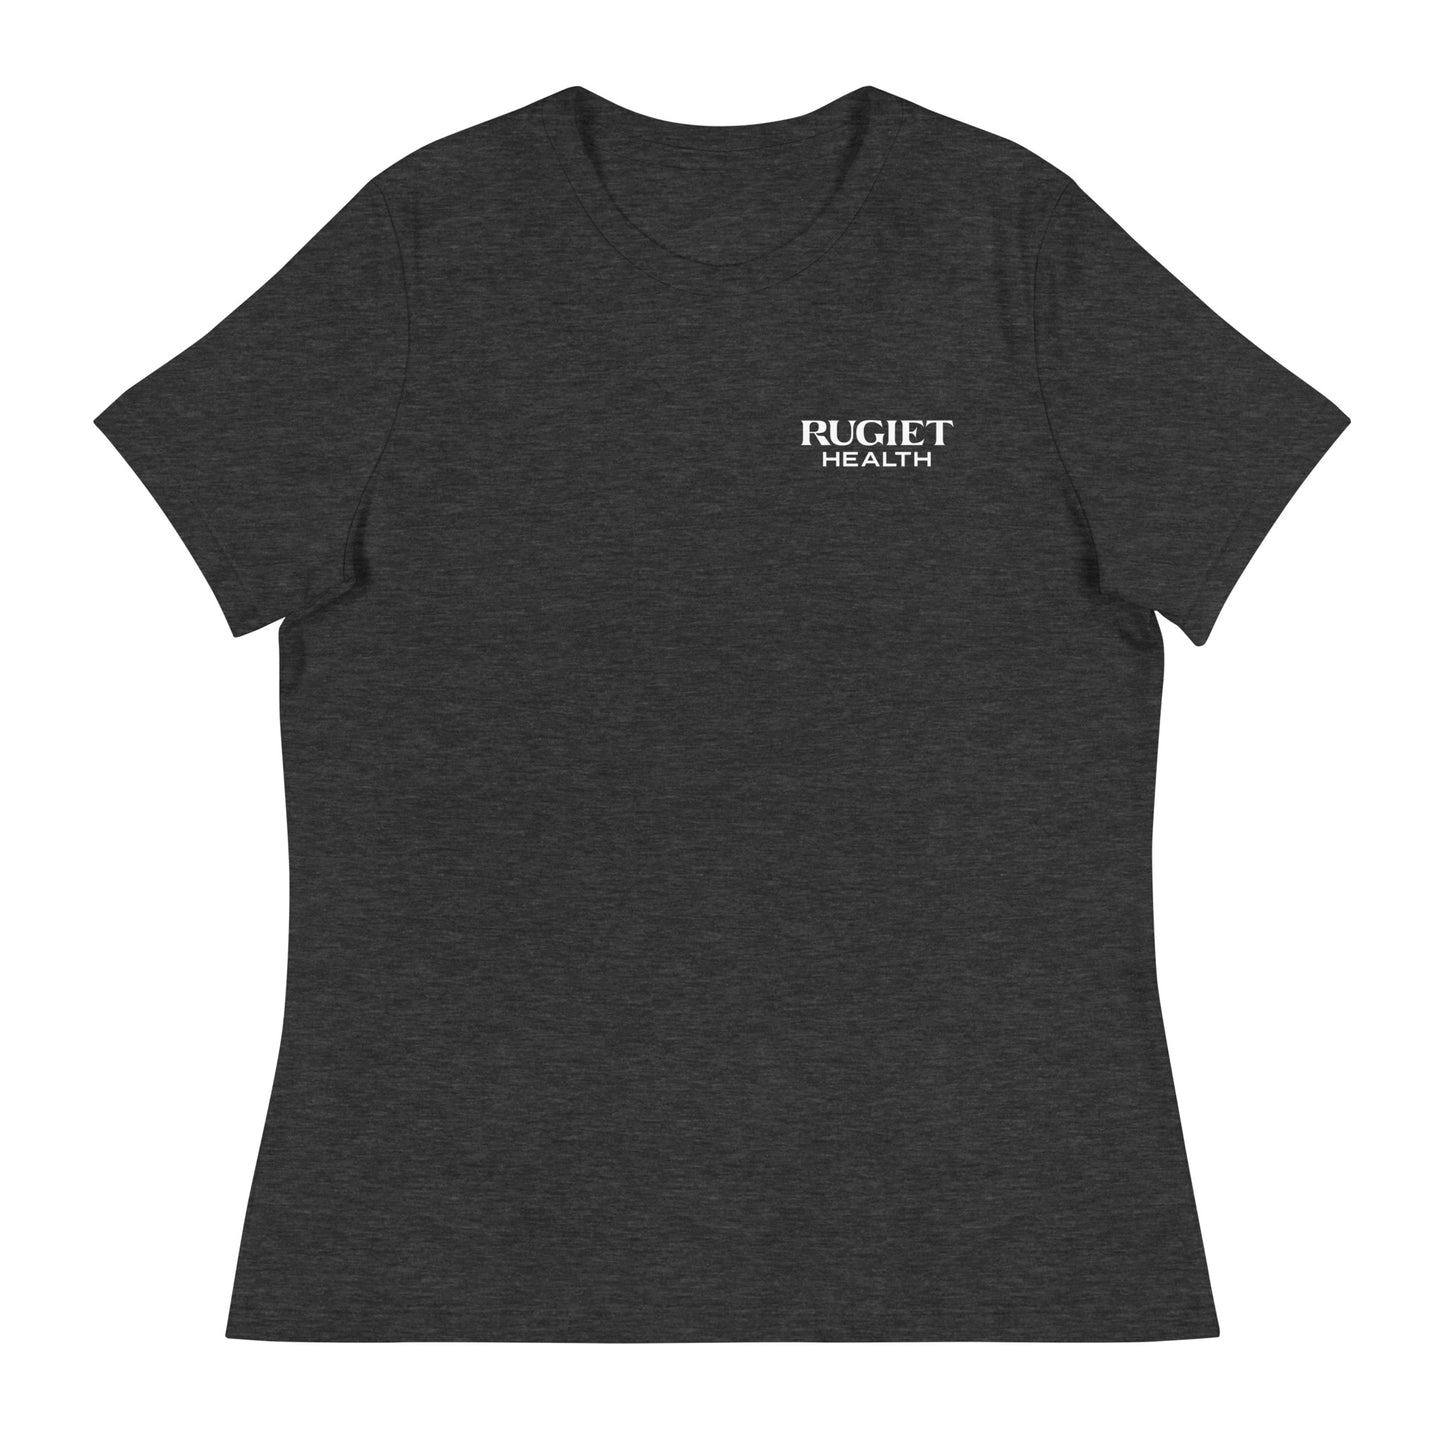 Women's Classic T-shirt - Rugiet Health